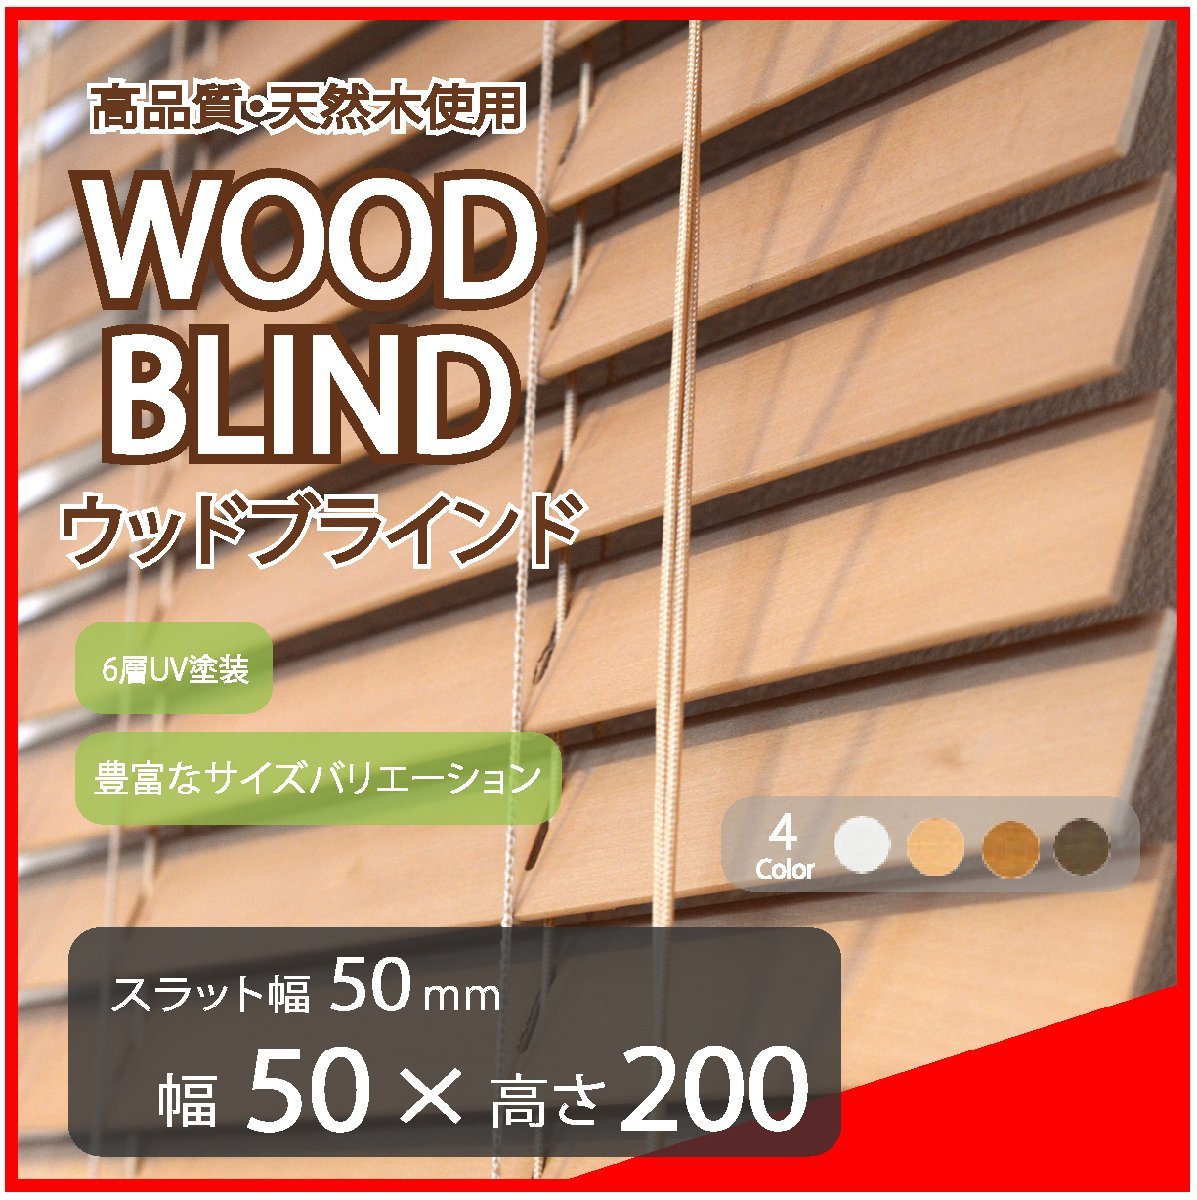 高品質 ウッドブラインド 木製 ブラインド 既成サイズ スラット(羽根)幅50mm 幅50cm×高さ200cm ライトブラウン